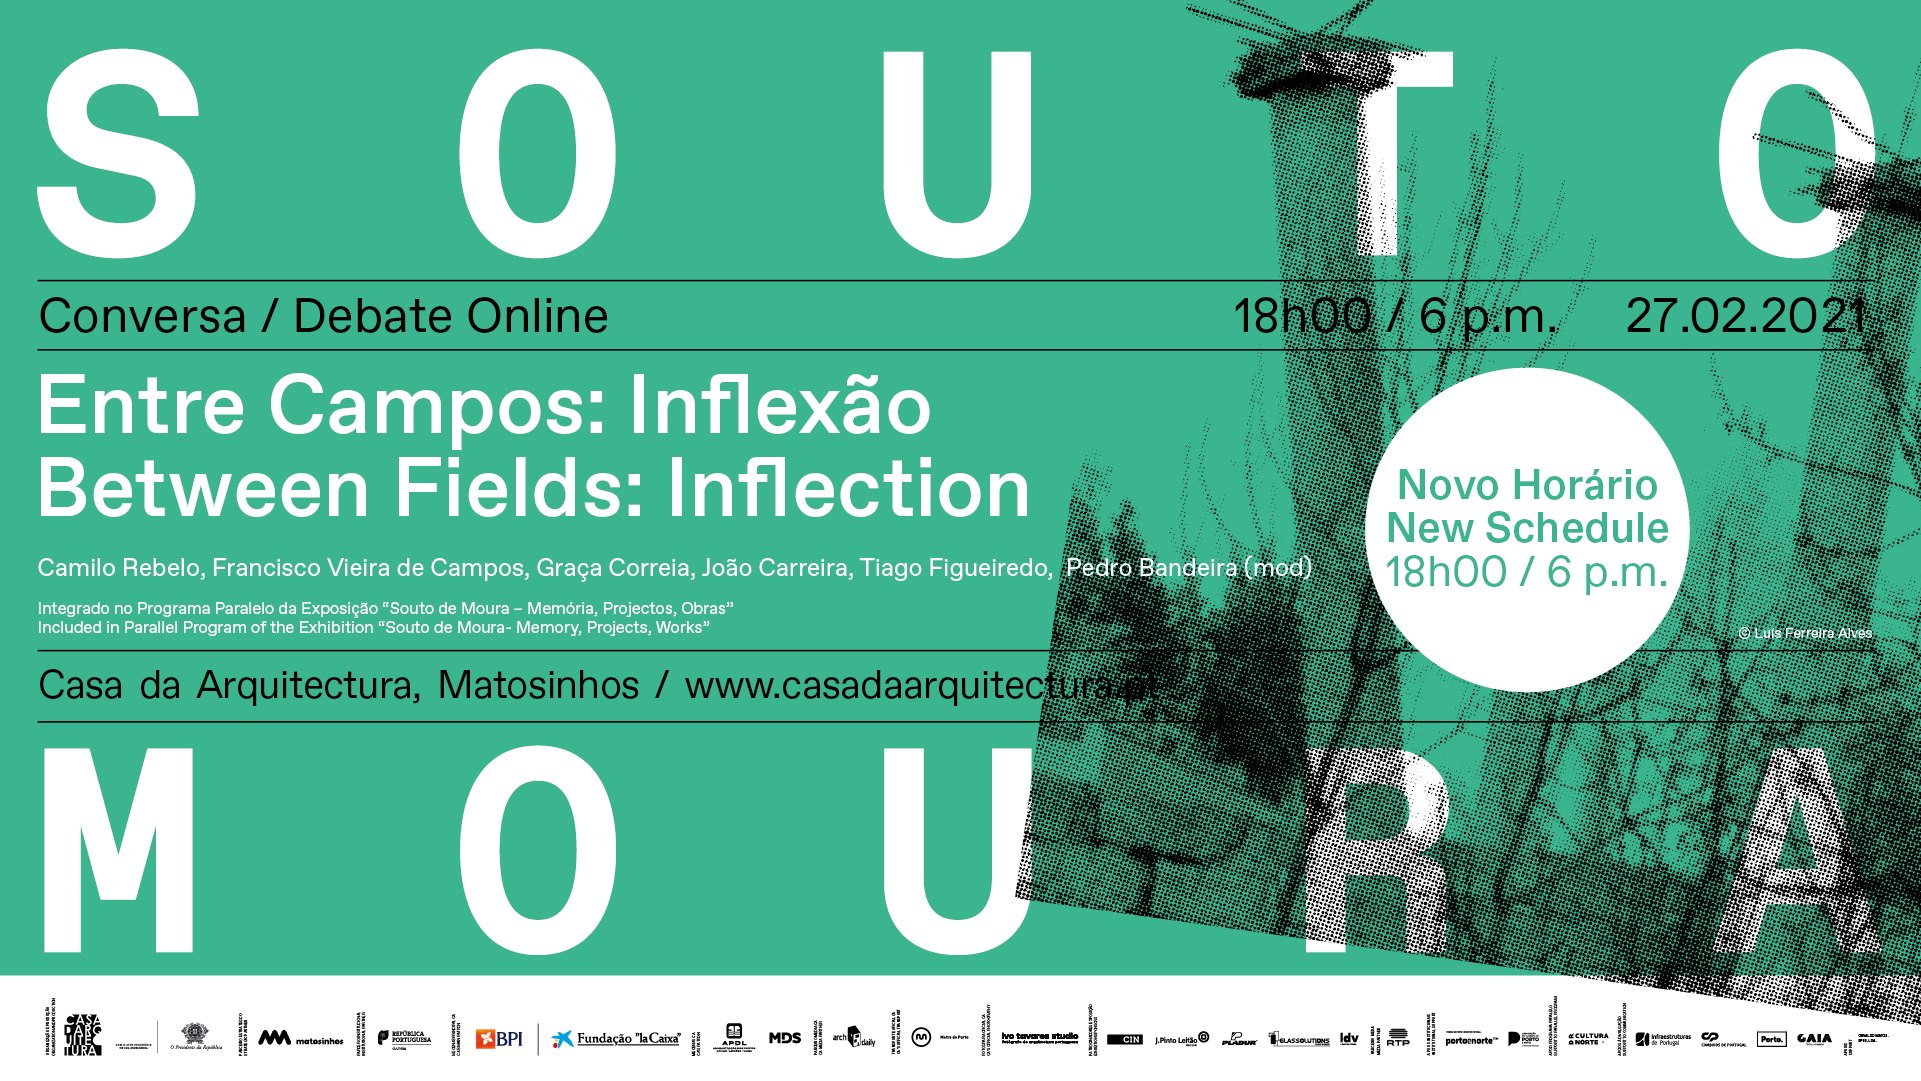 Conversa/Debate online 'Entre Campos: Inflexão' / 'Between Fields: Inflection'